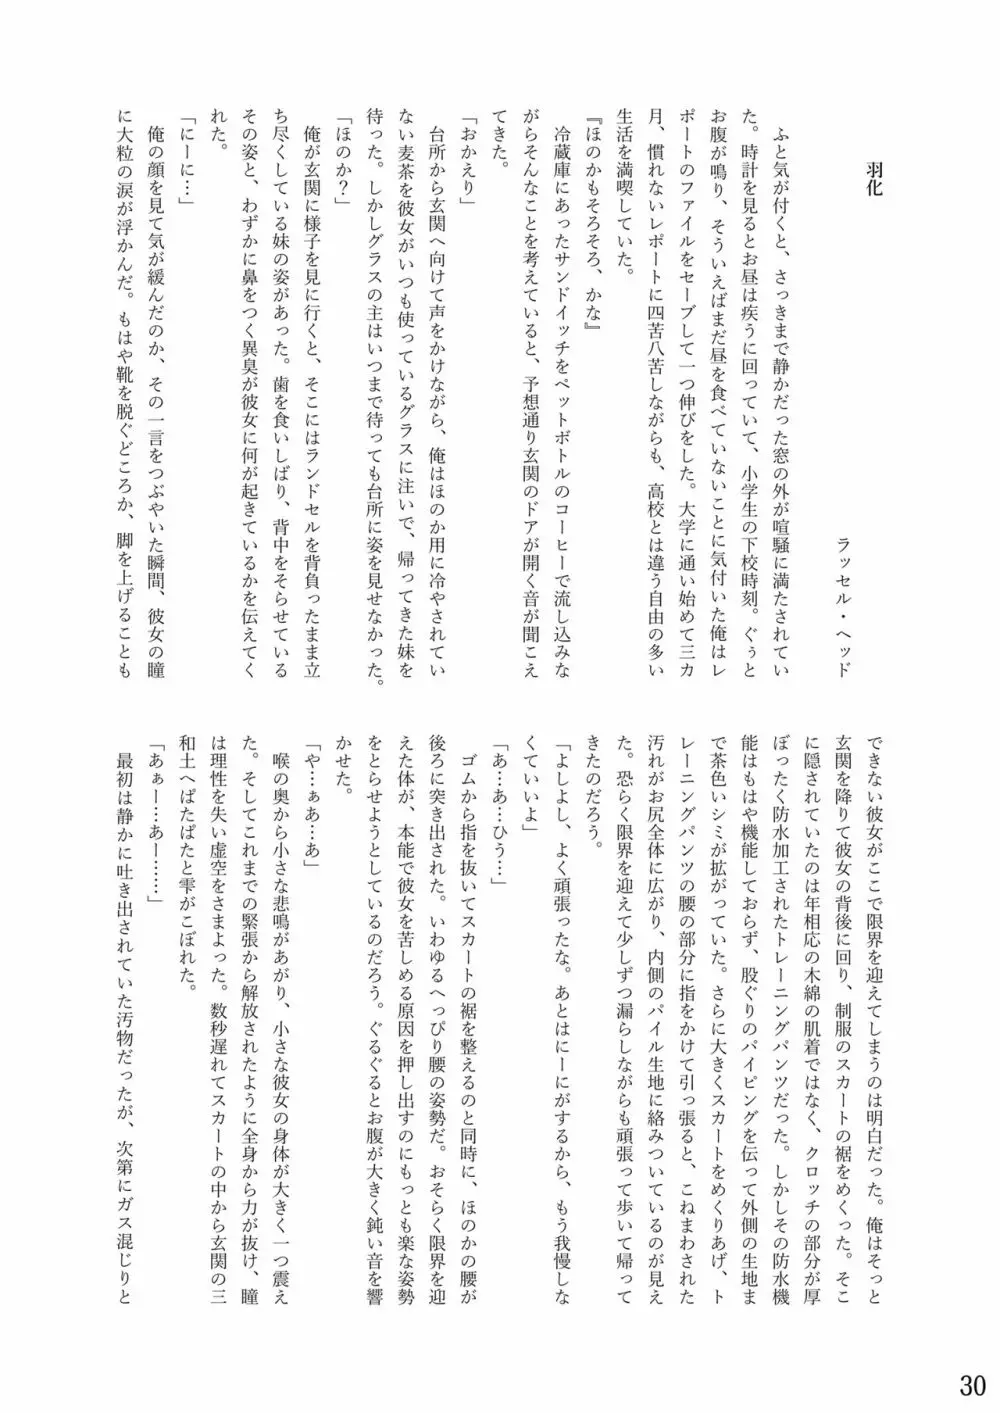 おむ☆フェス8開催記念合同誌「おむつっ娘PARTY!9」 30ページ